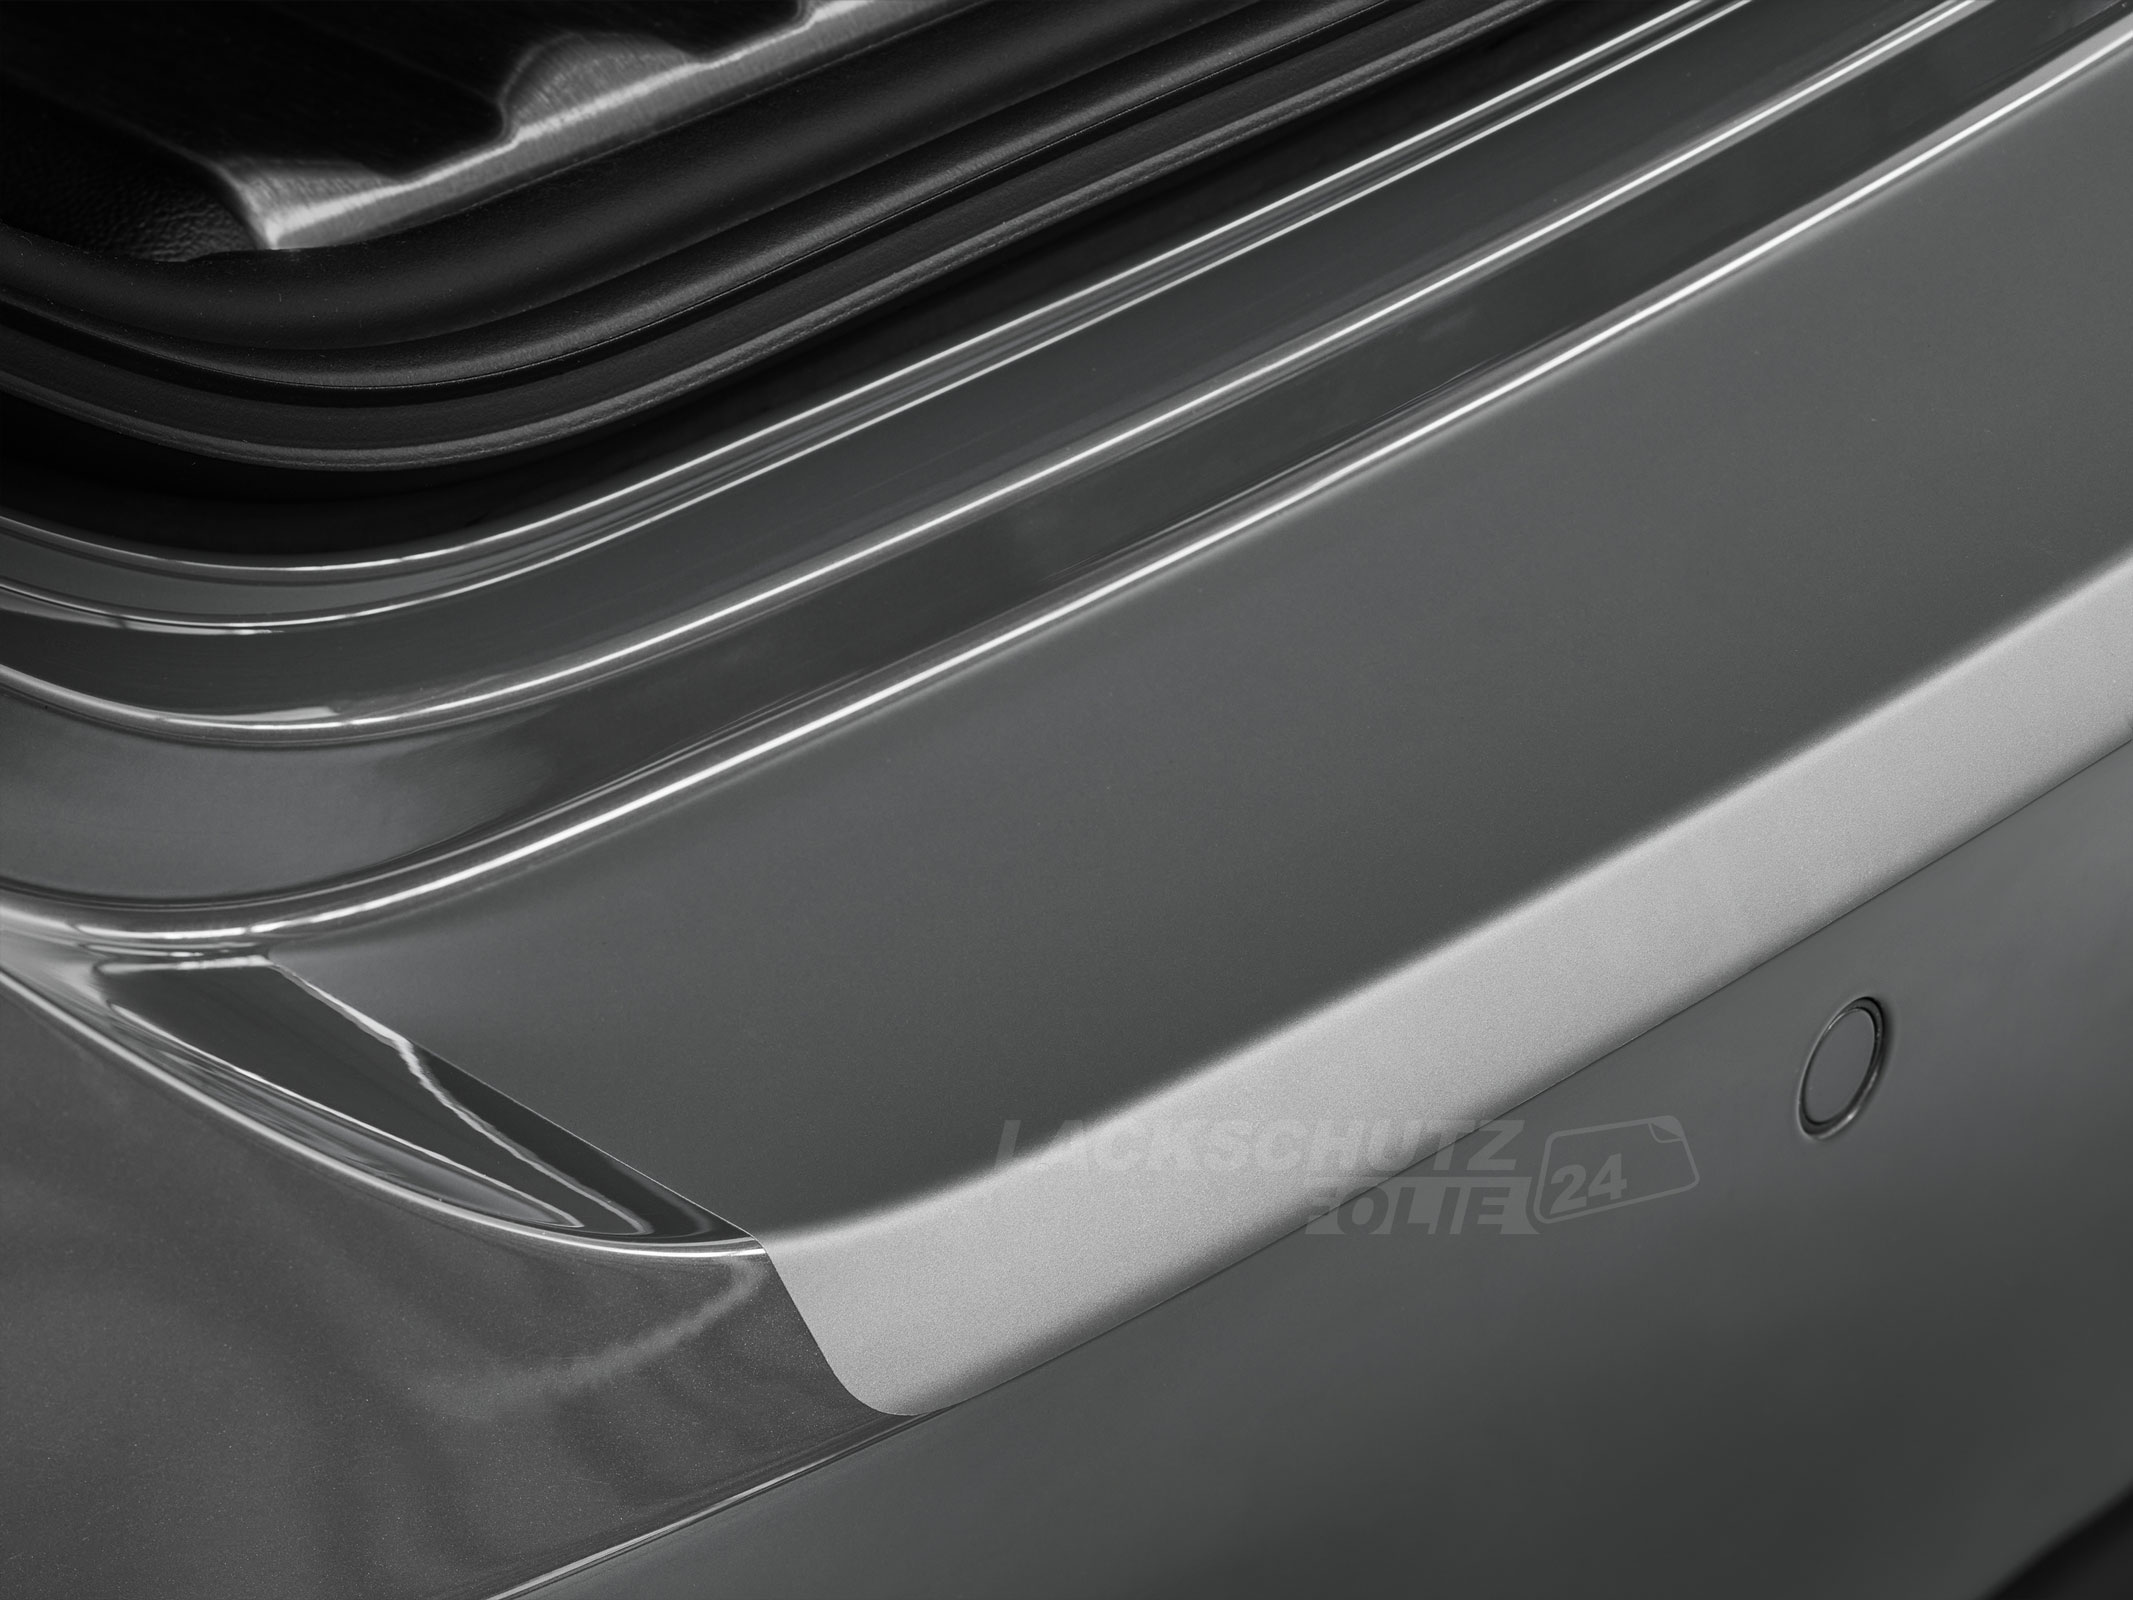 Ladekantenschutzfolie - Transparent Glatt MATT für Mazda 5 (I) Typ CR, BJ 06/2005-10/2010